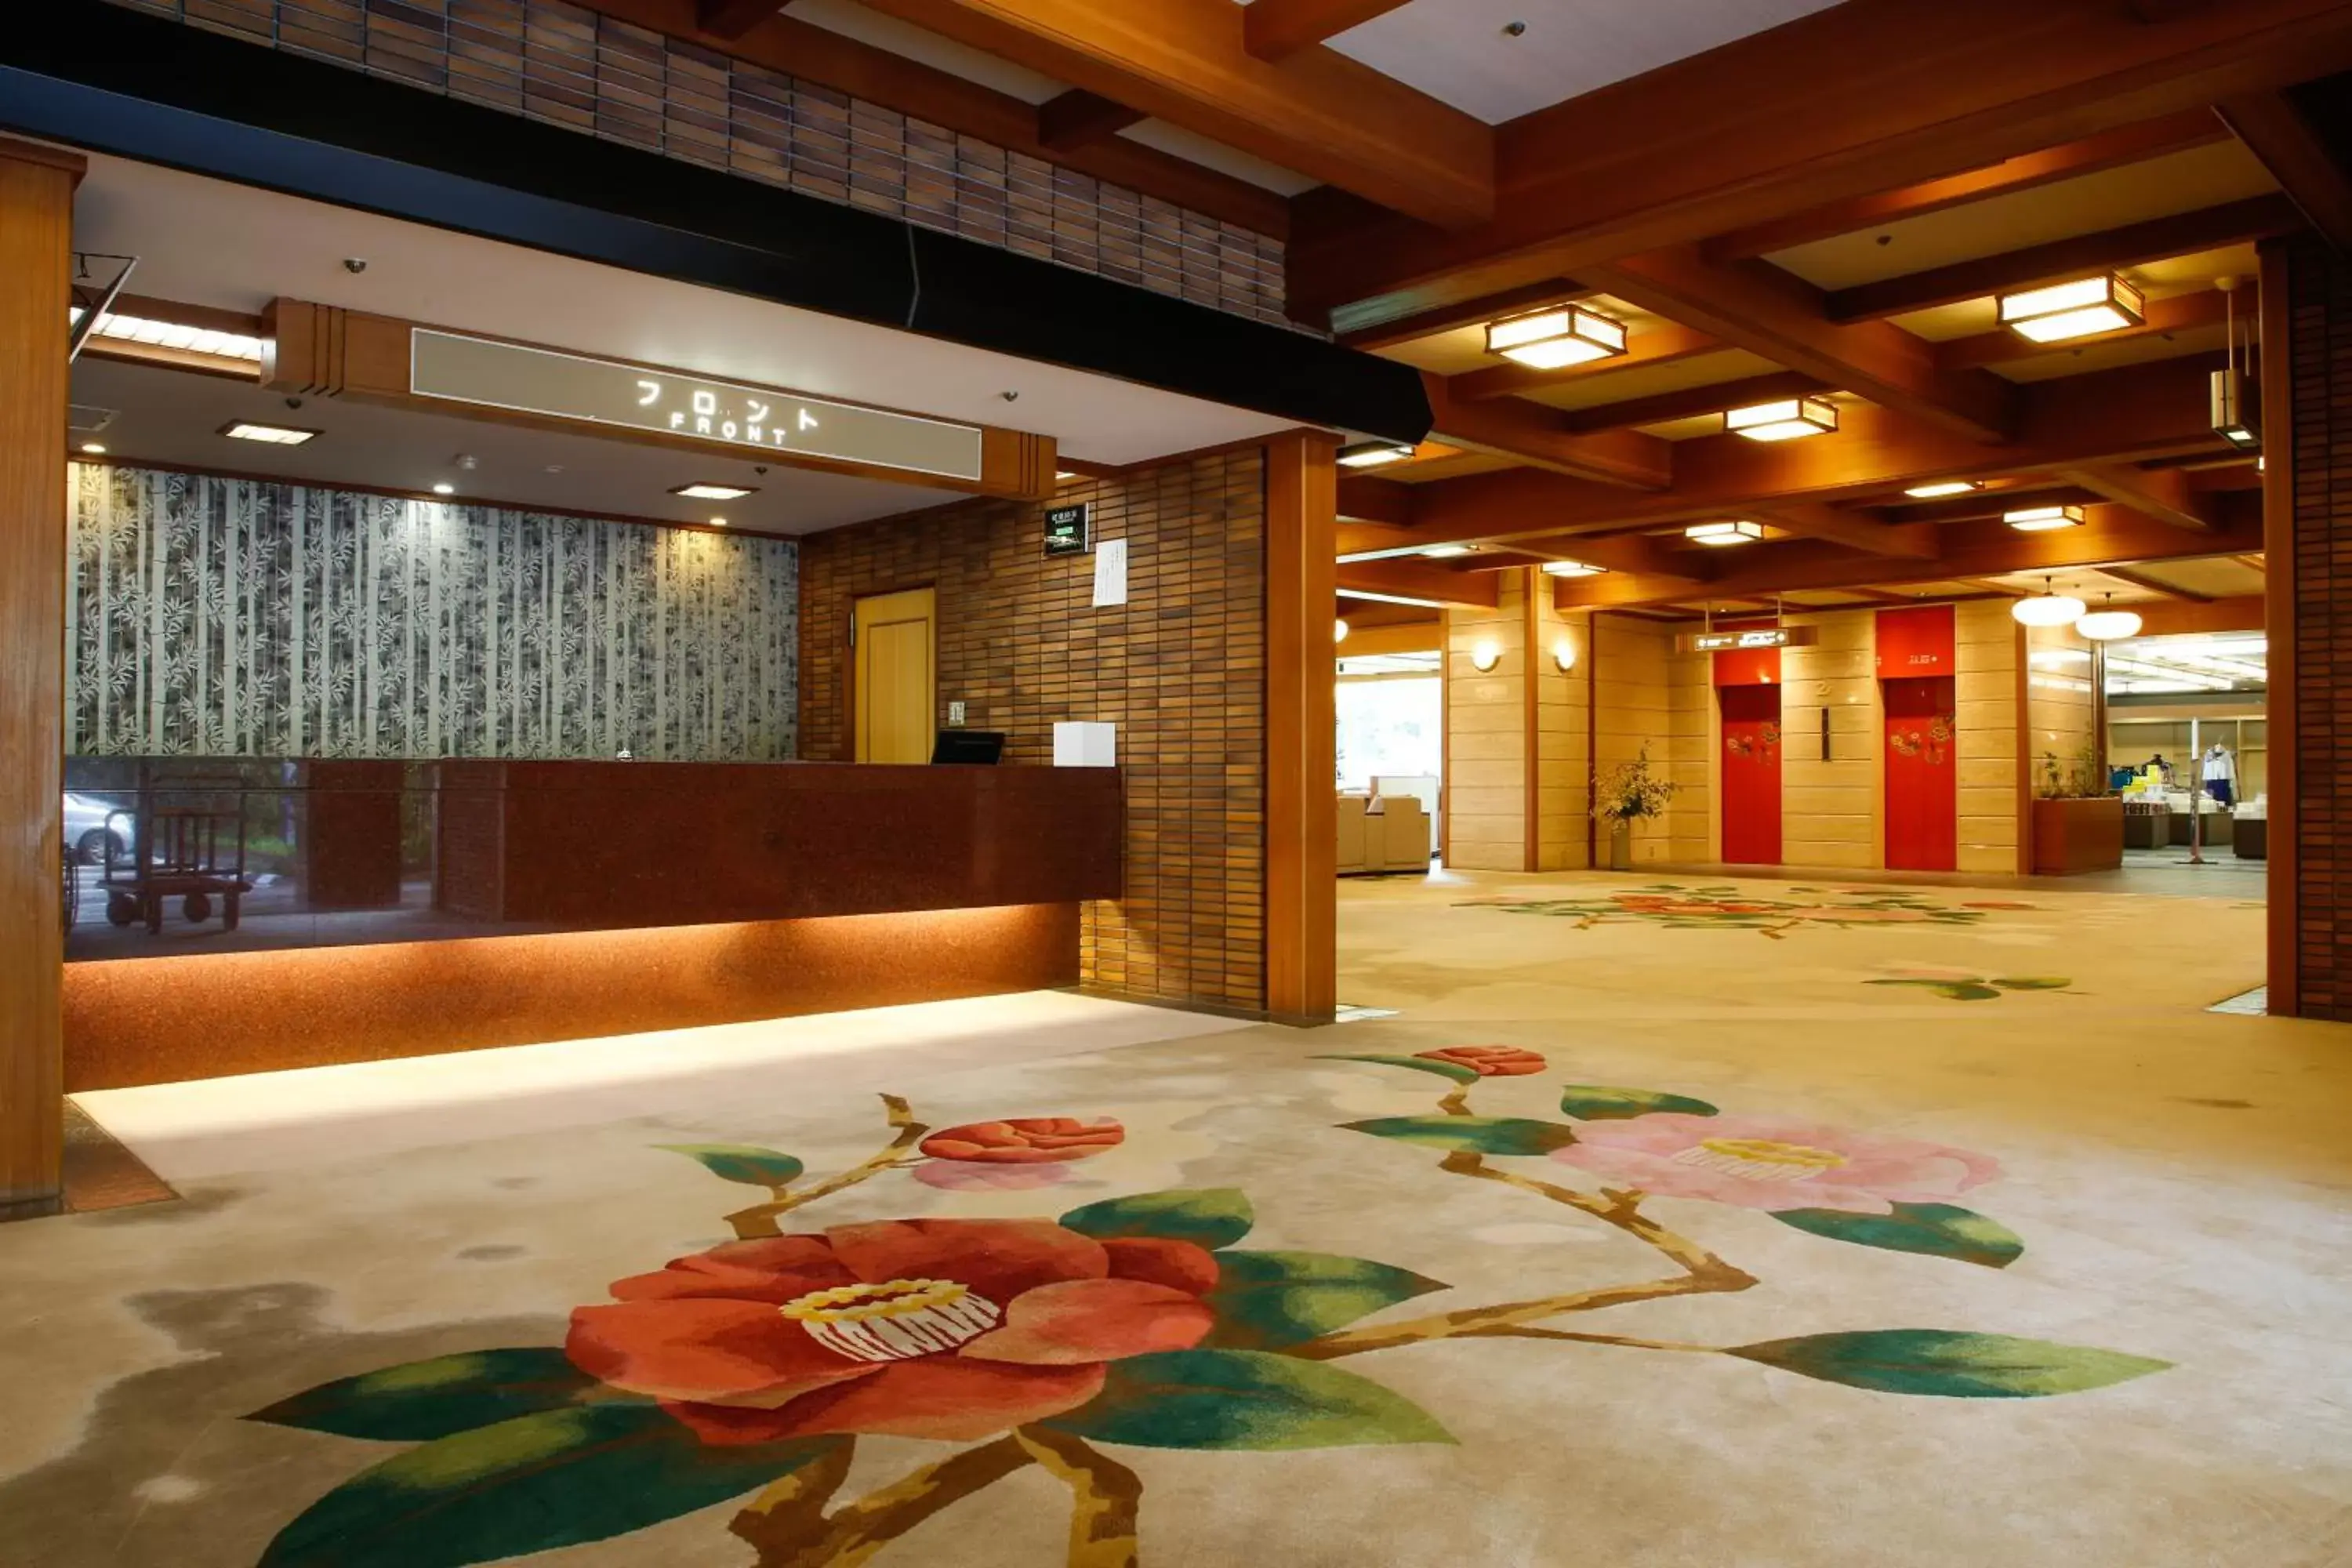 Lobby or reception in Yamanaka Onsen Hanatsubaki                                                 